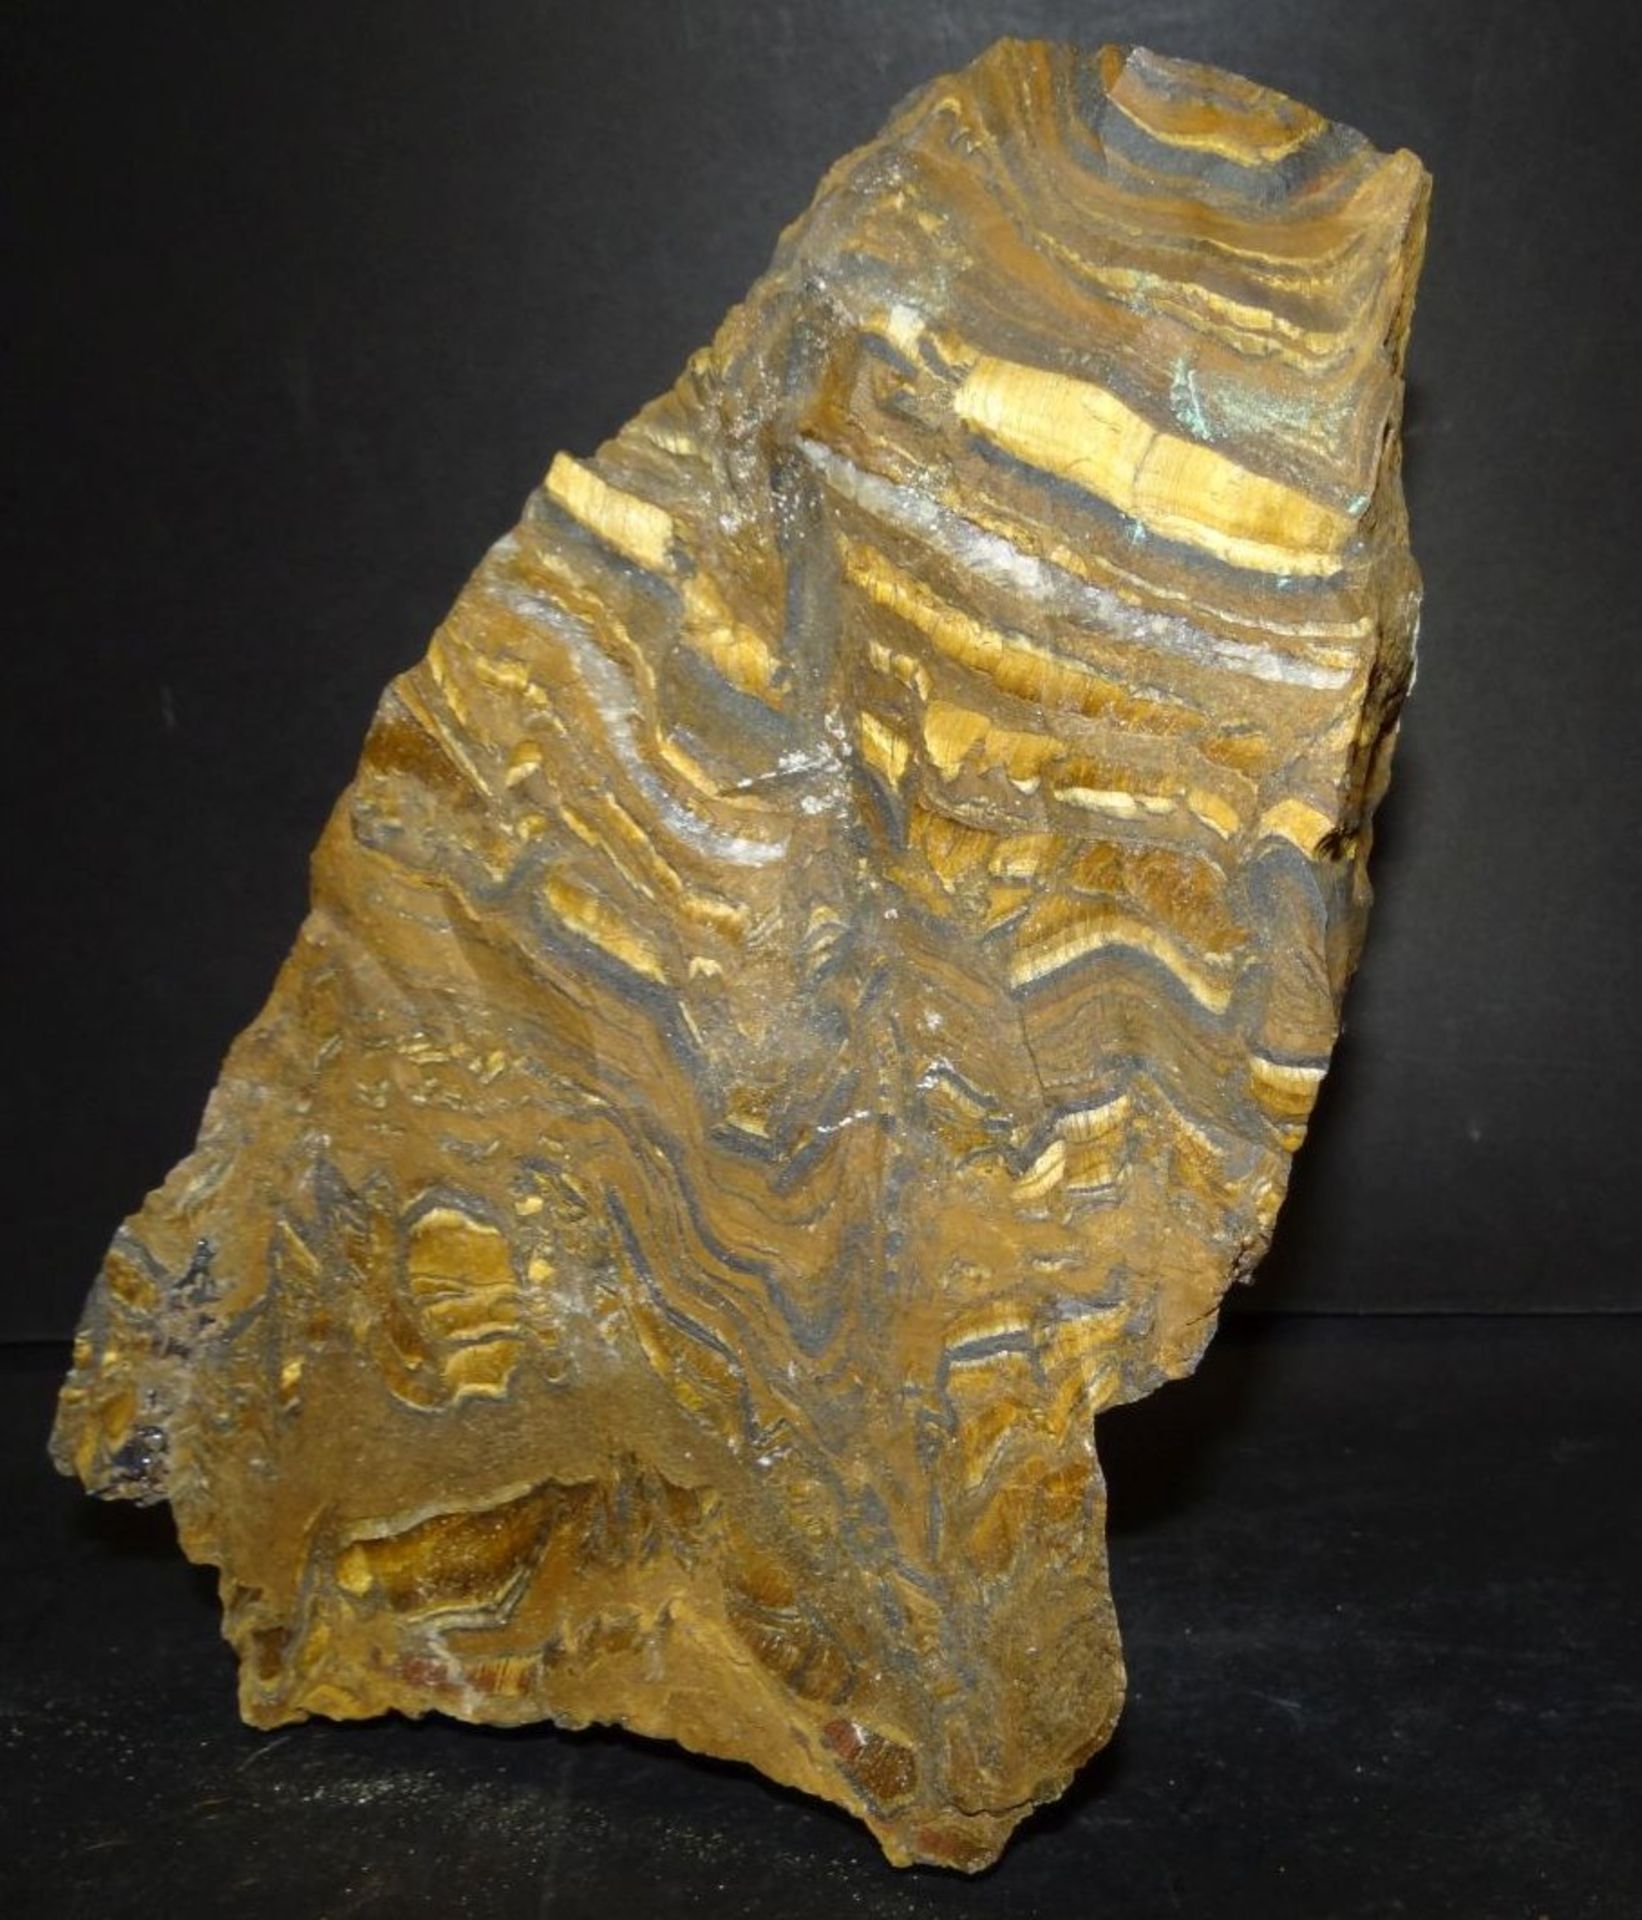 grosses Stück Mineral?, 19x13 cm, 2,5 k- - -22.61 % buyer's premium on the hammer priceVAT margin